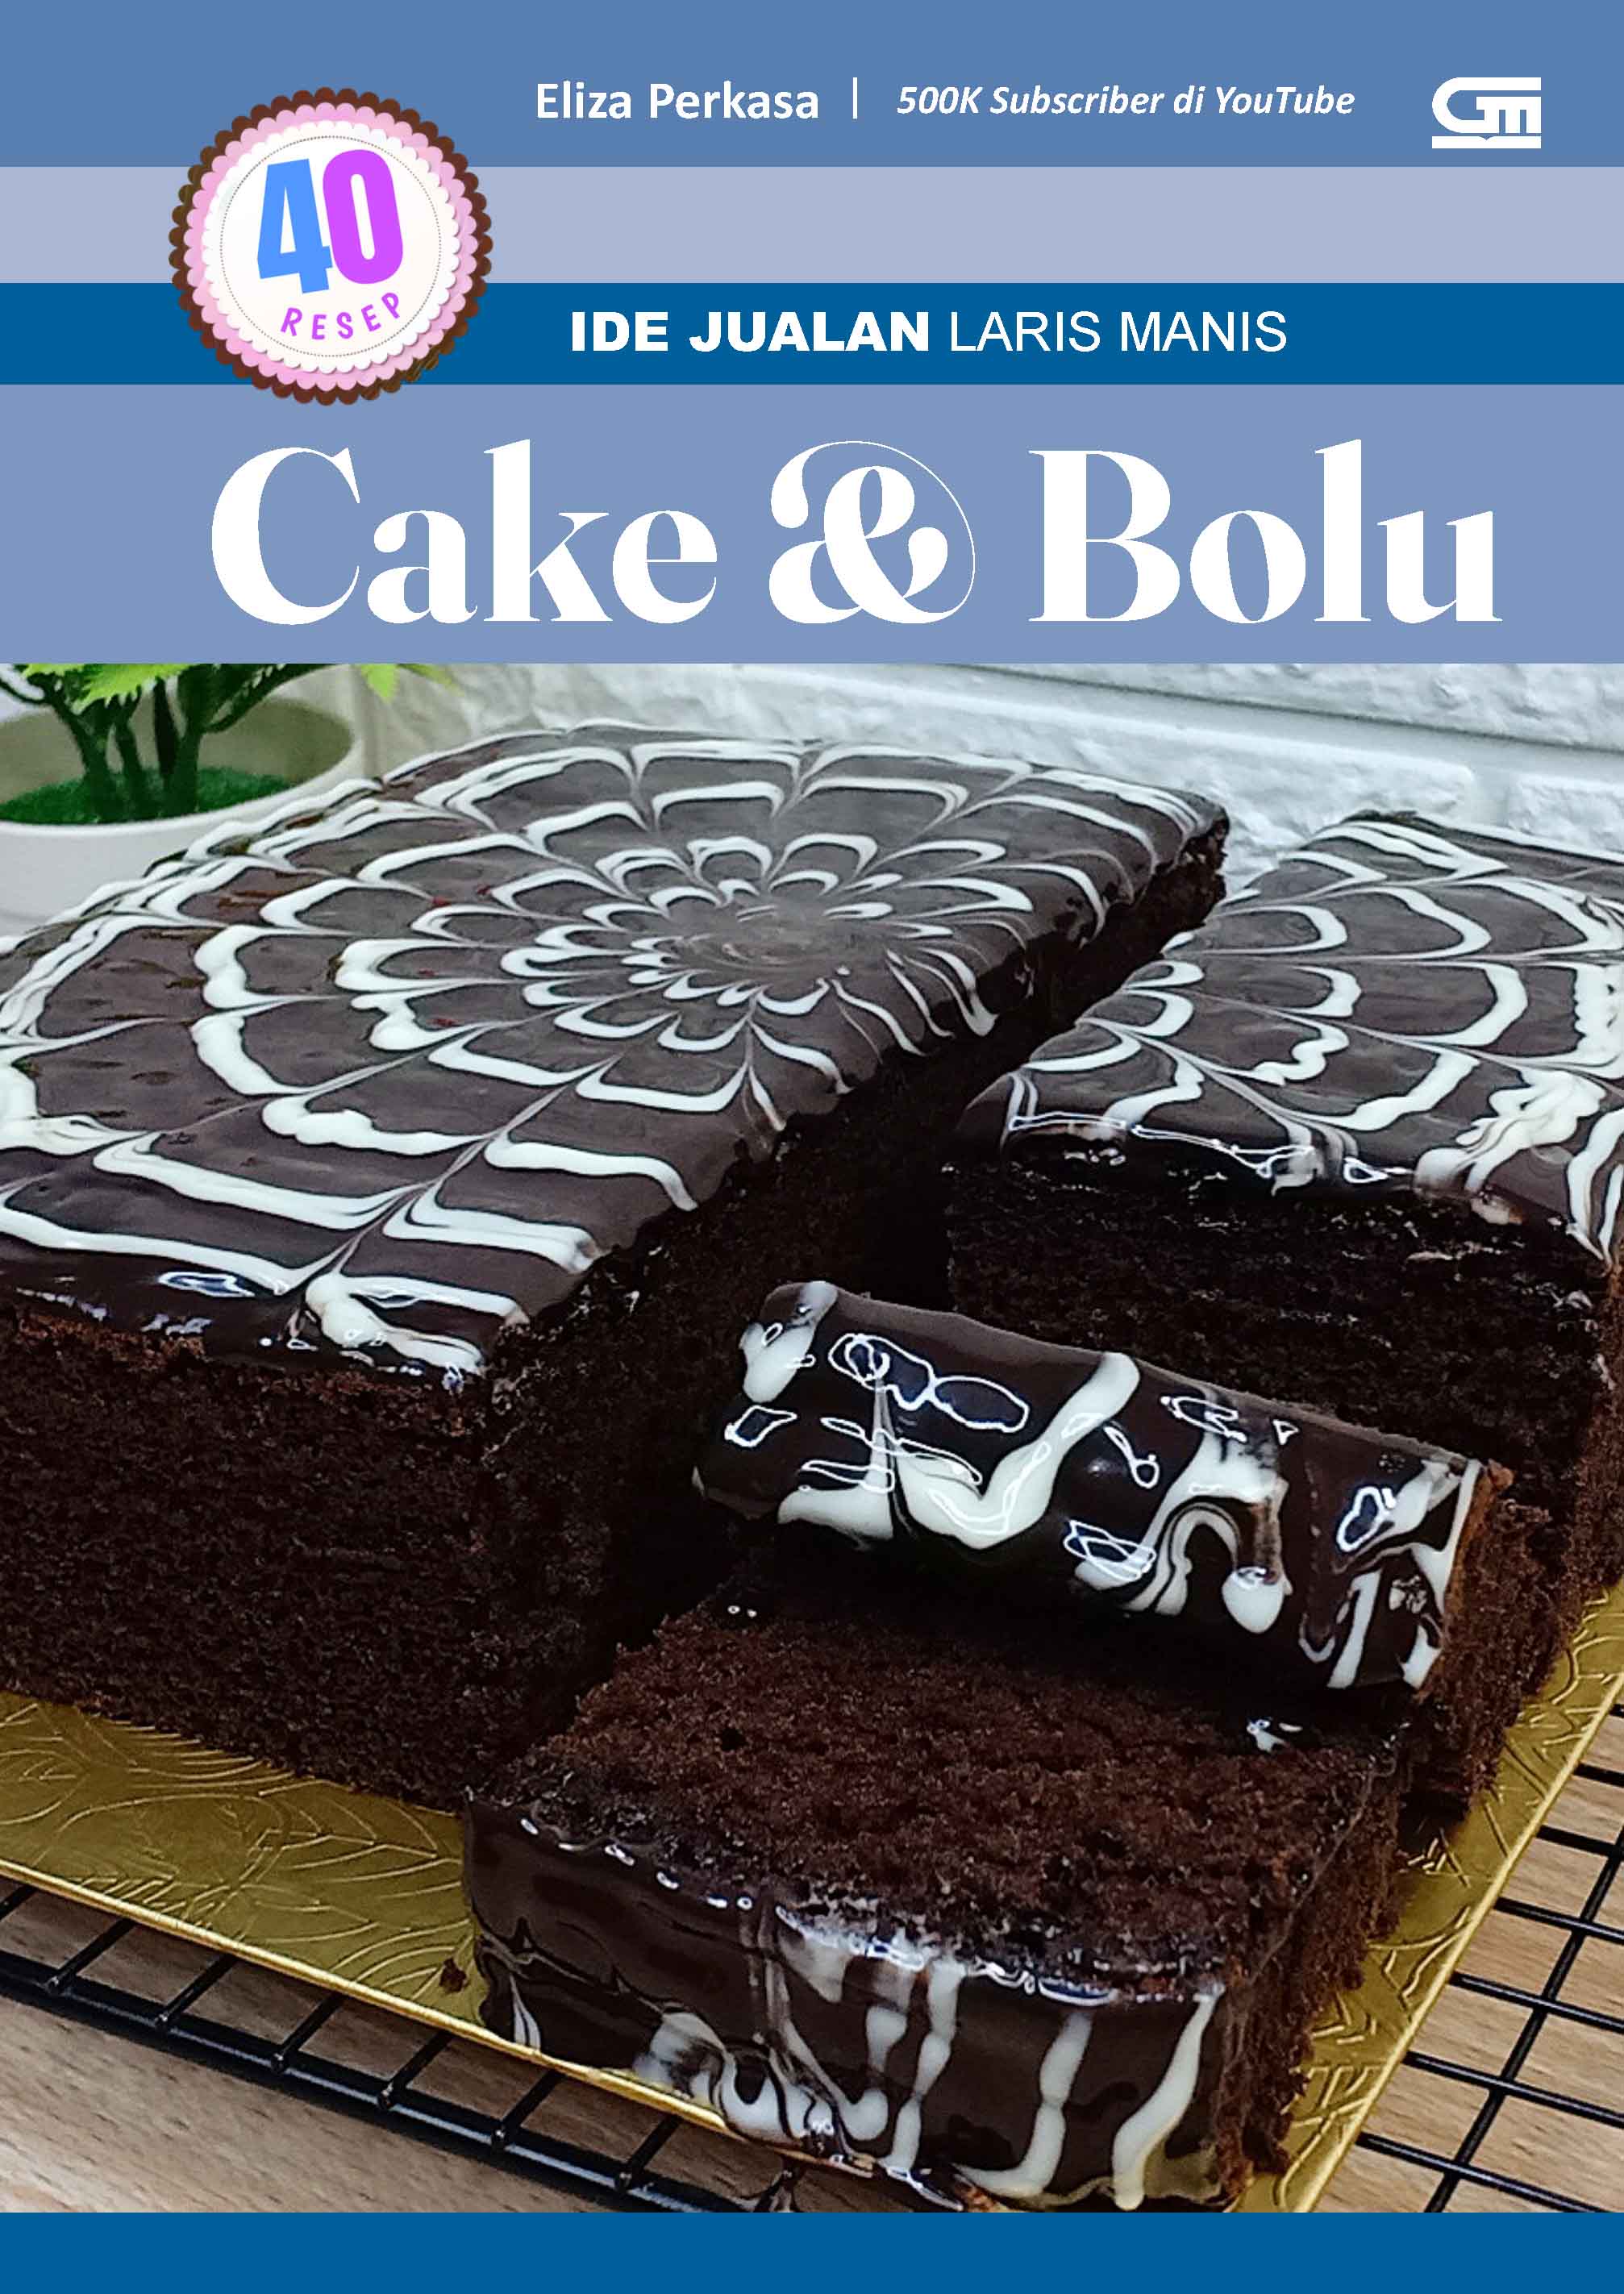 Ide Jualan: Laris Manis 40 Resep Cake dan Bolu